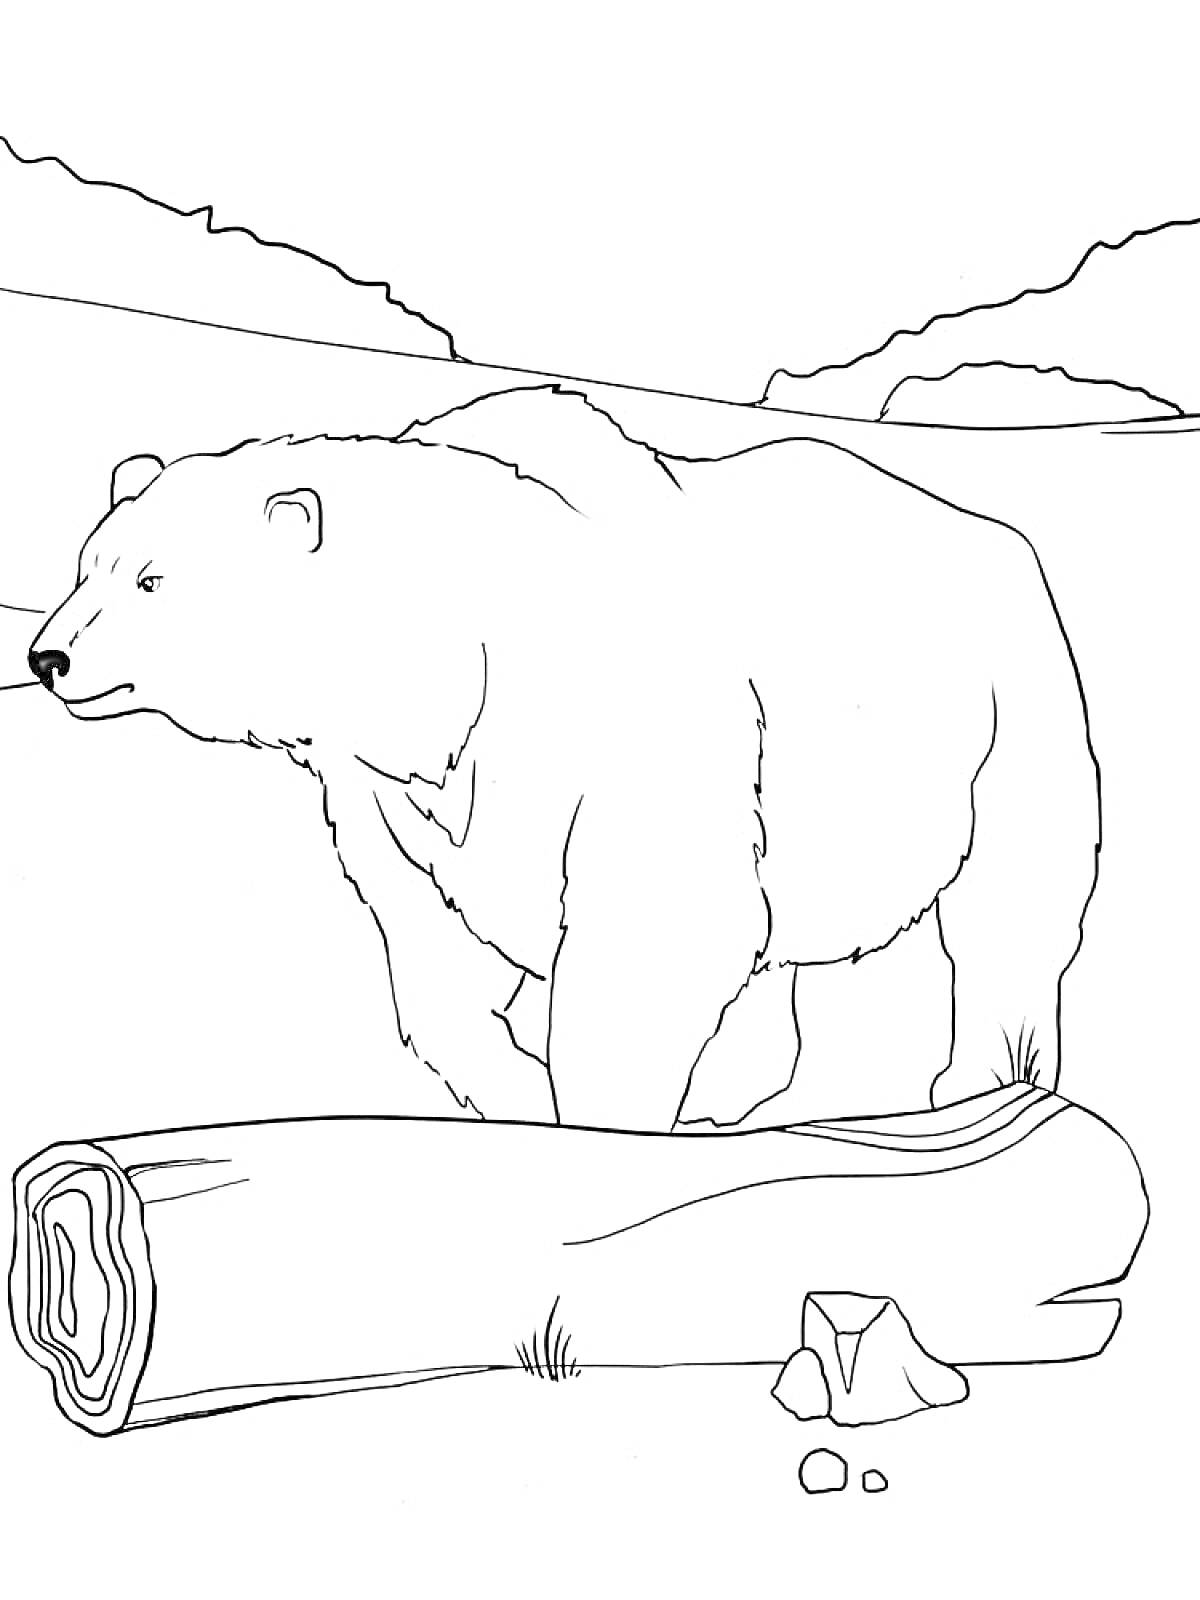 Раскраска Белый медведь, бревно, камни, горная местность на заднем плане